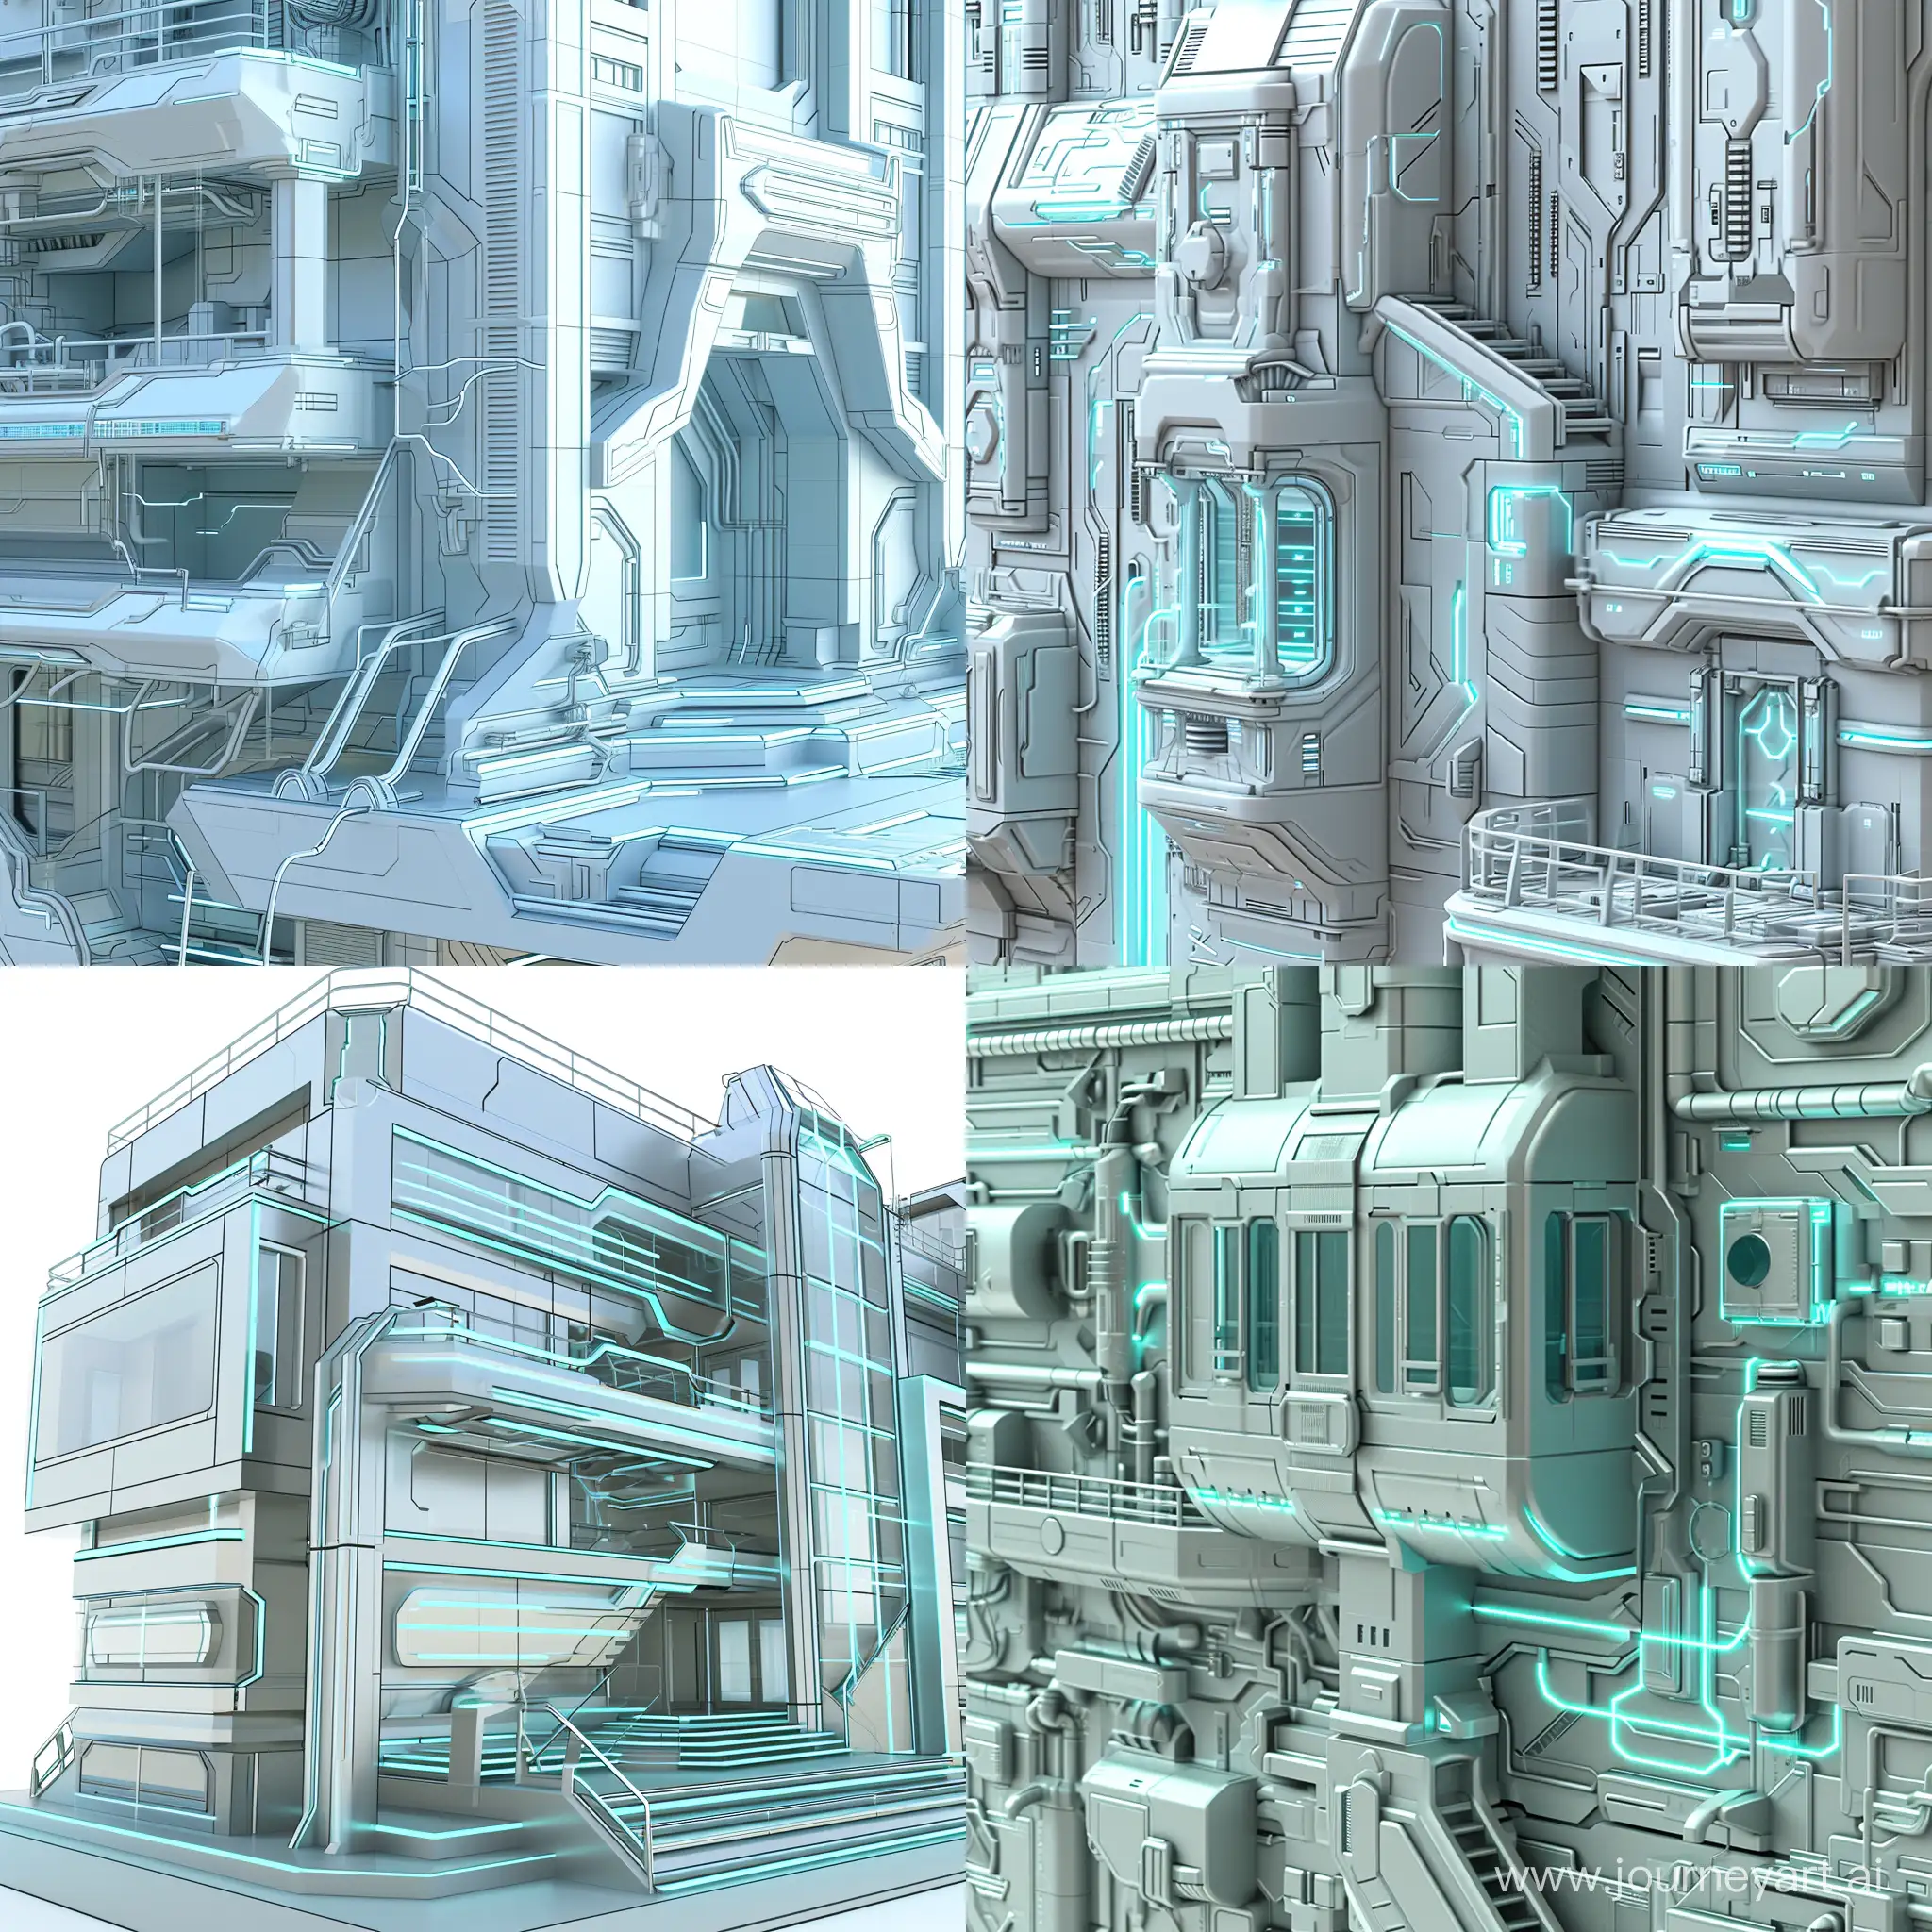 Требуется создание детальной 3D модели футуристического городского здания. Включить детали фасада, окон, лестниц и других архитектурных элементов. Использовать текстуры высокого разрешения для создания реалистичной поверхности здания. Основной цвет - металлический серебристый. Акцентные элементы - энергетические линии светло-голубого цвета.